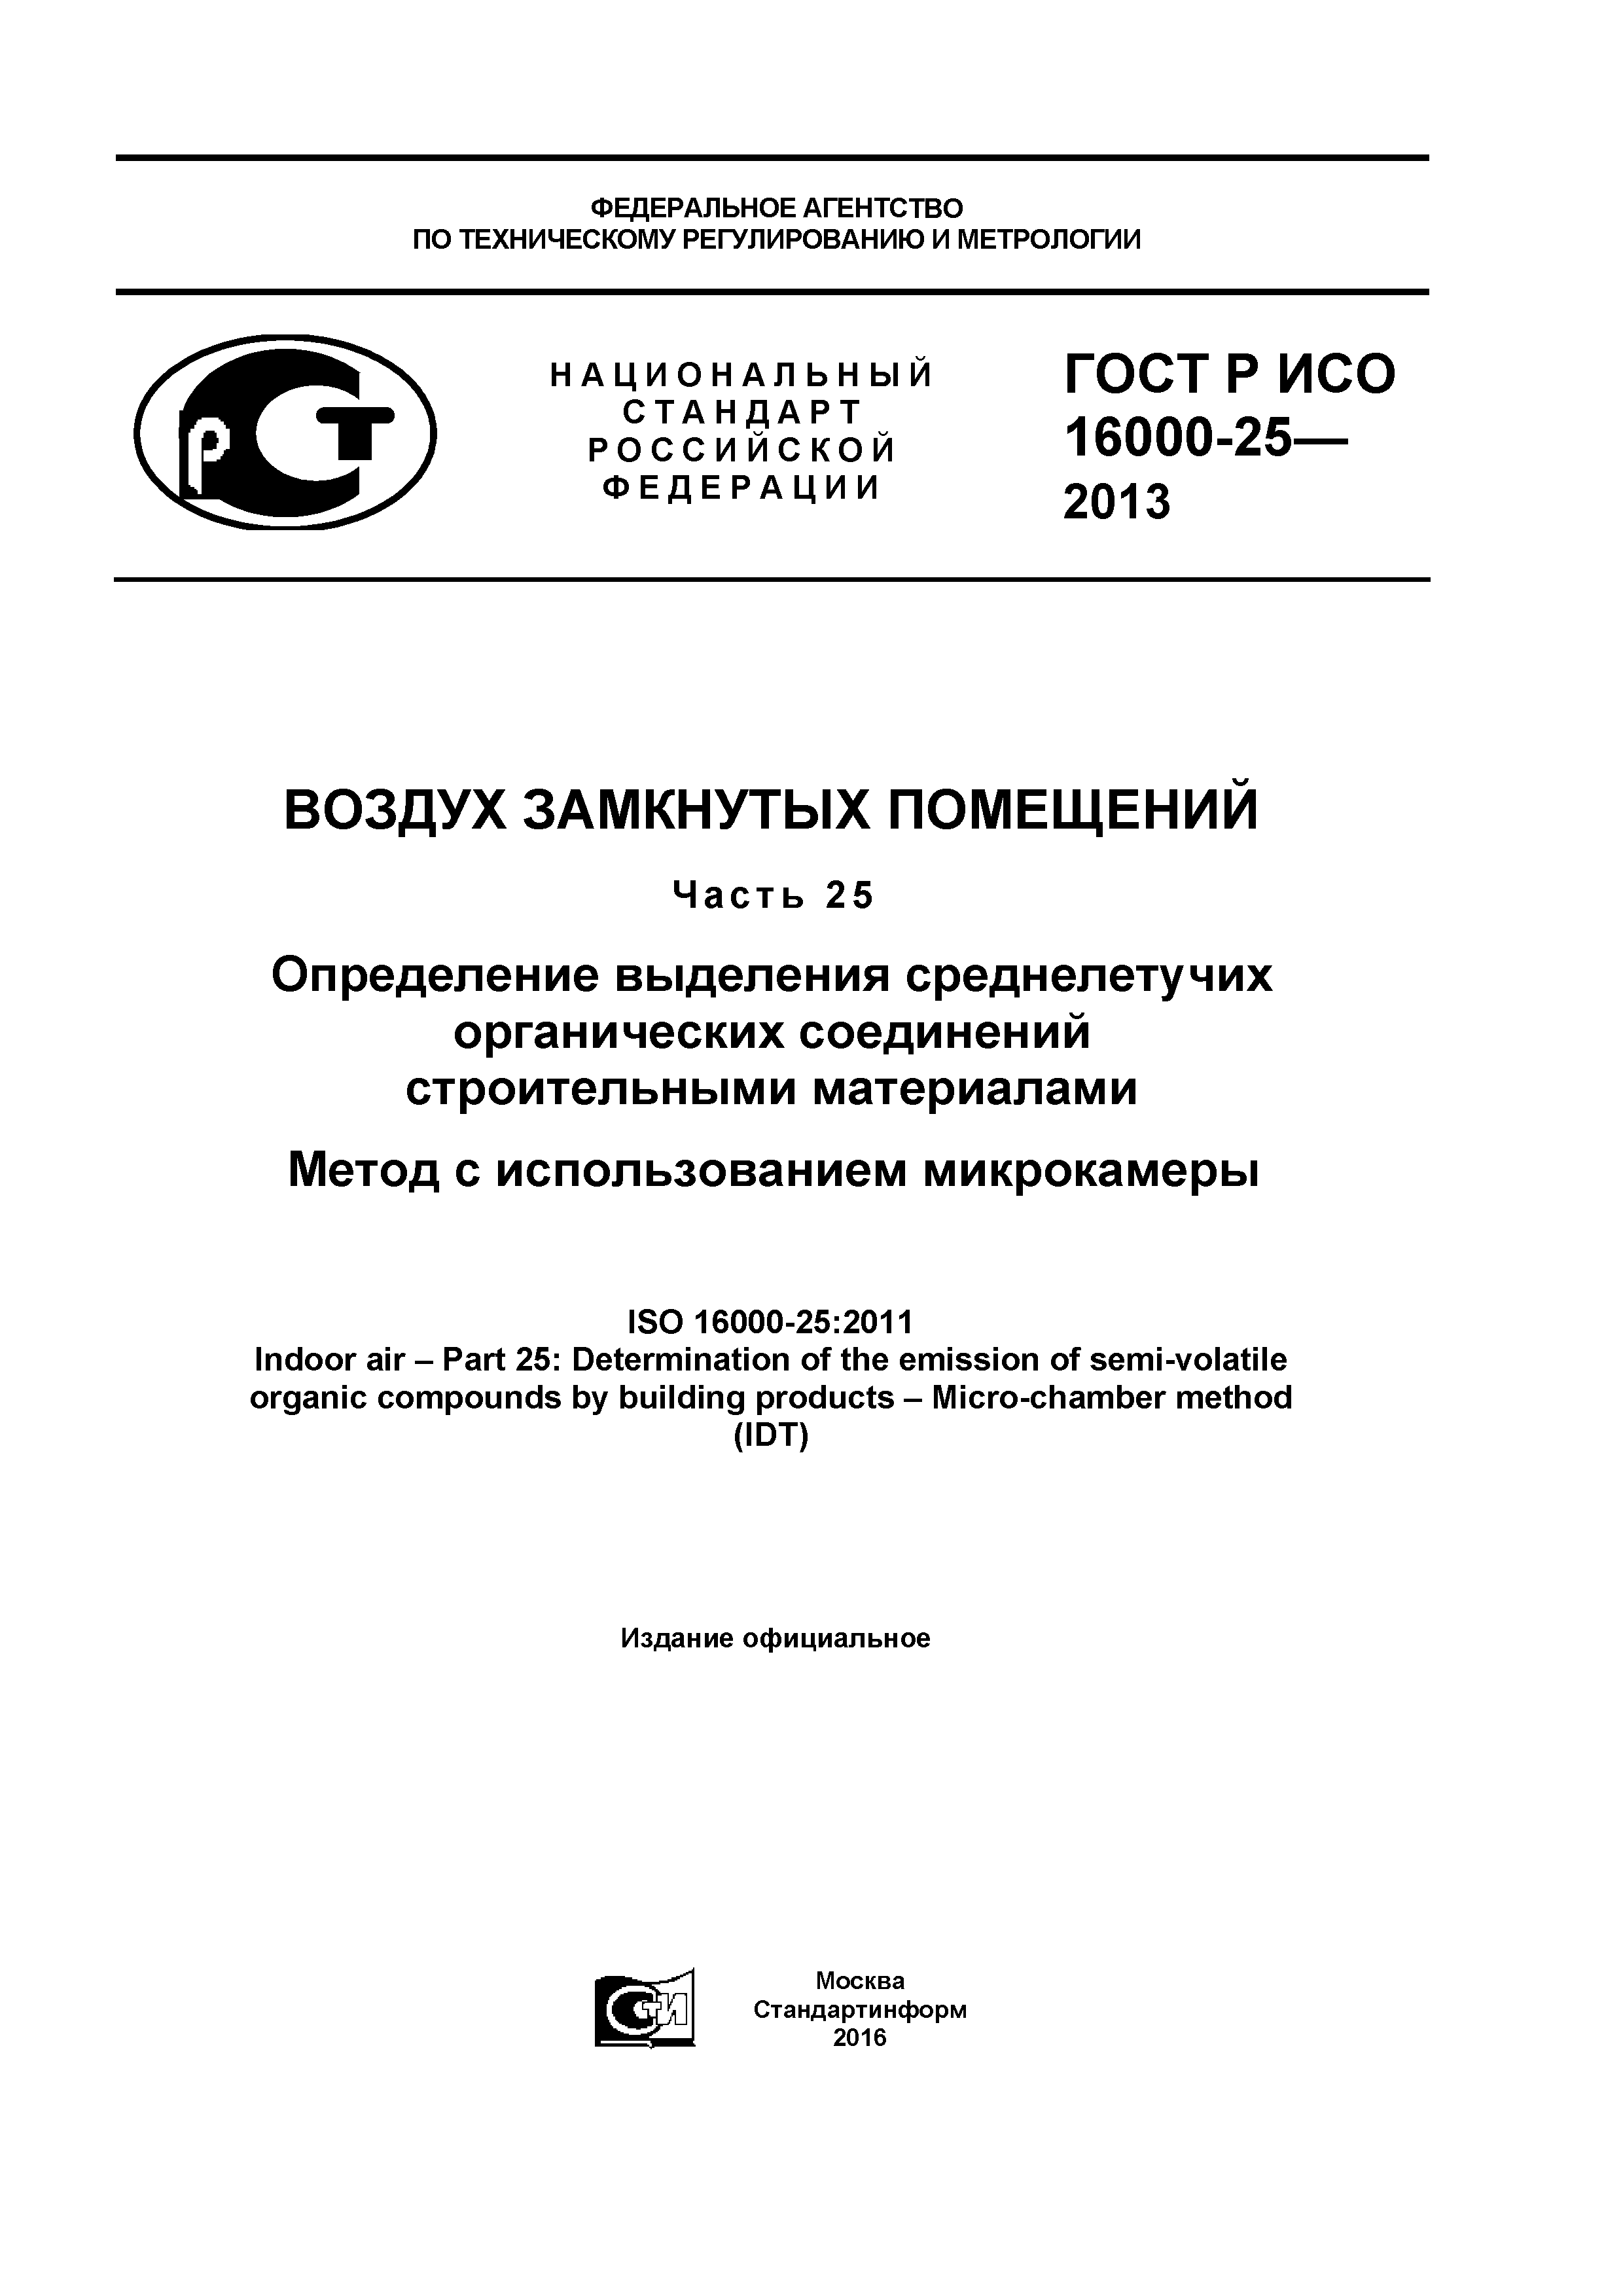 ГОСТ Р ИСО 16000-25-2013